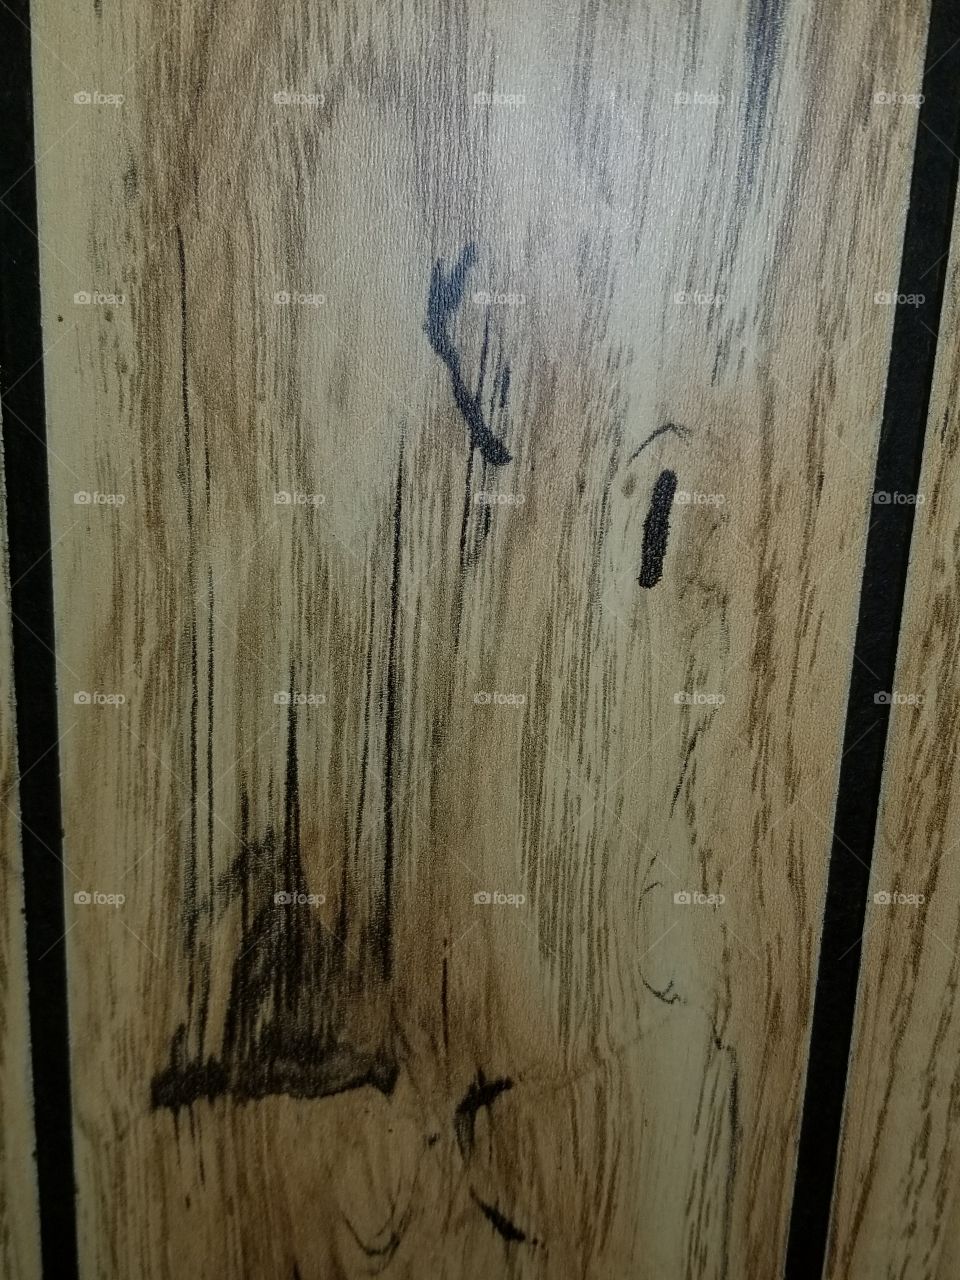 1973 wood paneling wall.